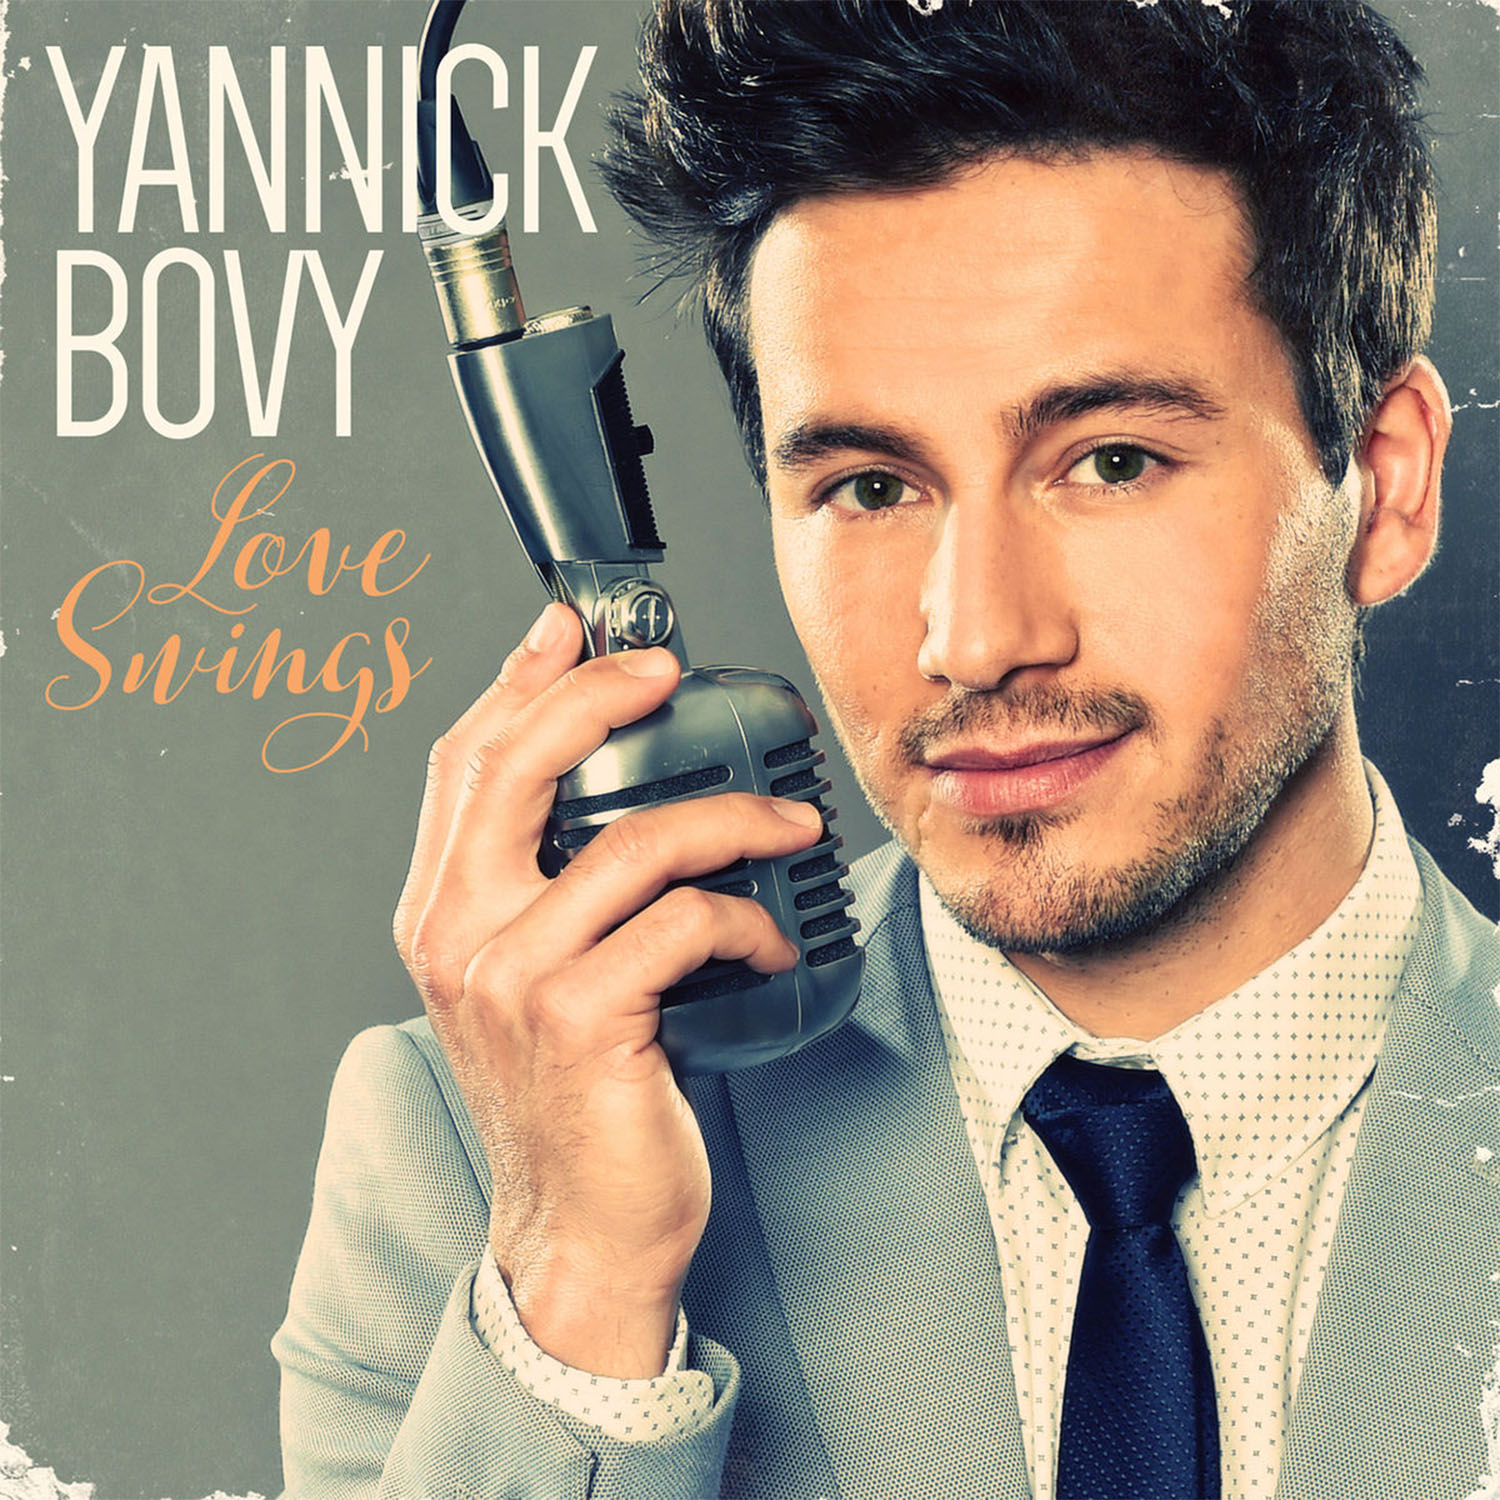 yannick_bovy-love_swings_cover